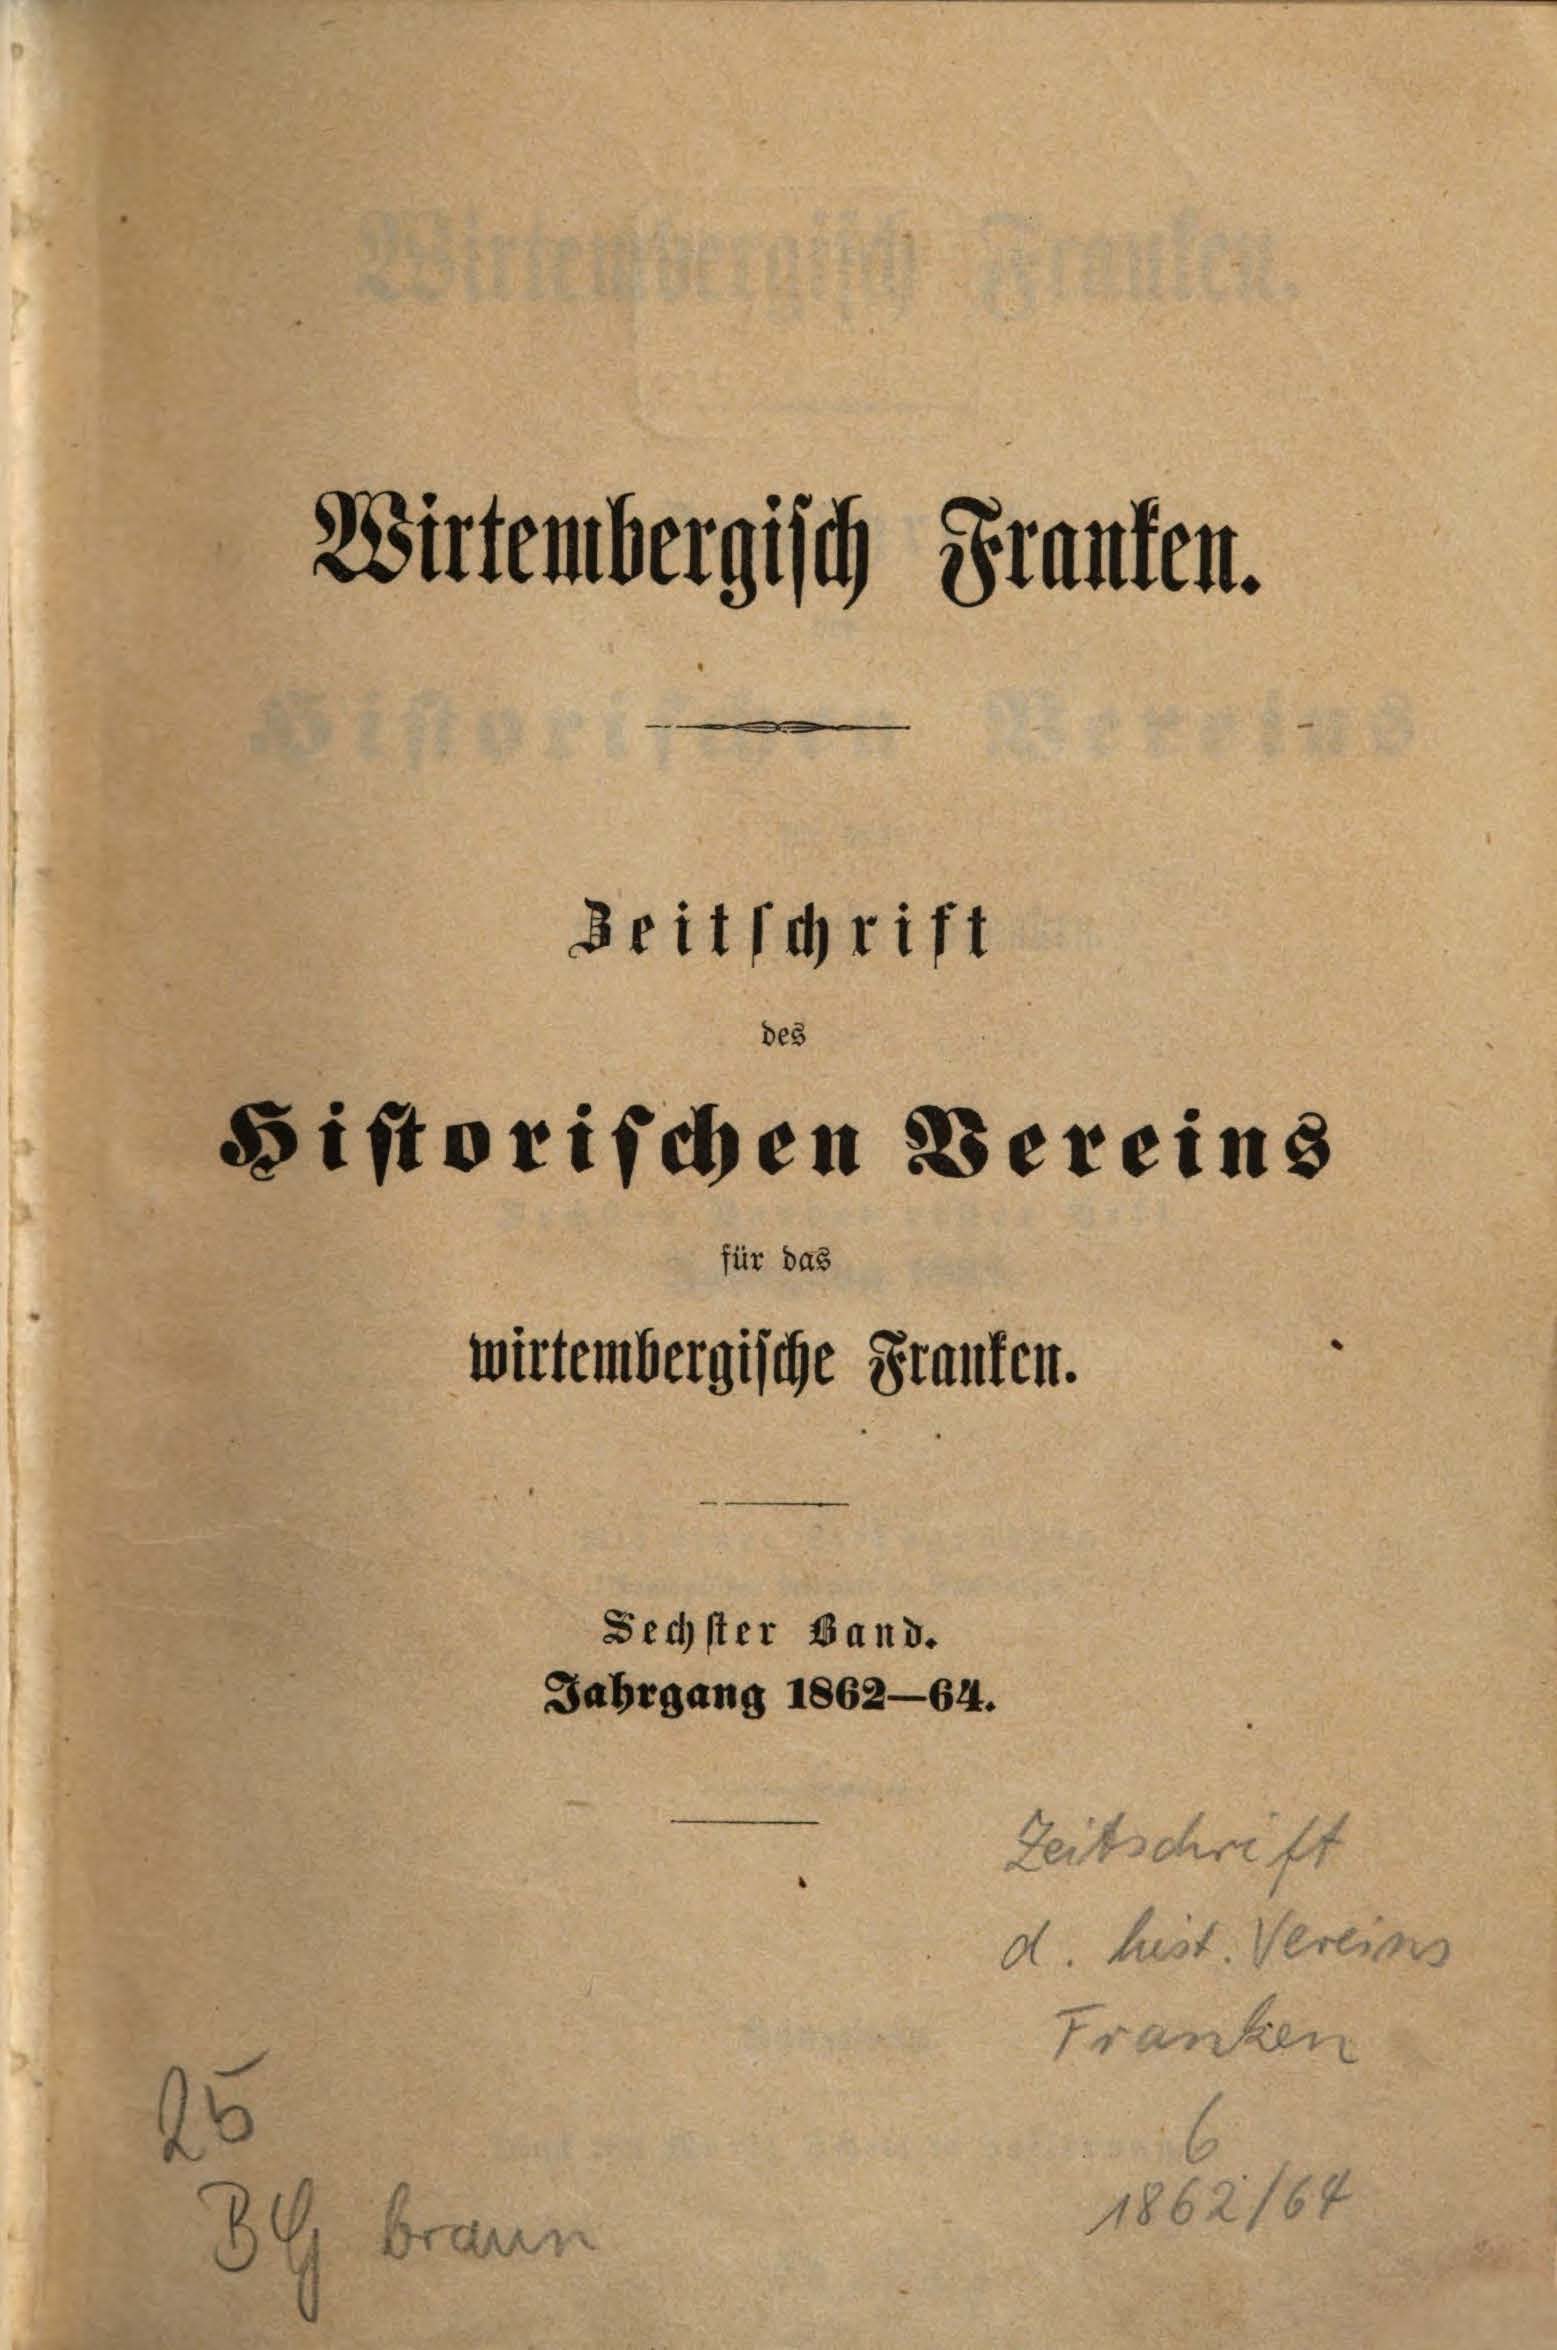                     Ansehen Bd. 6 Nr. 1 (1862): Zeitschrift des Historischen Vereins für das Württembergische Franken
                